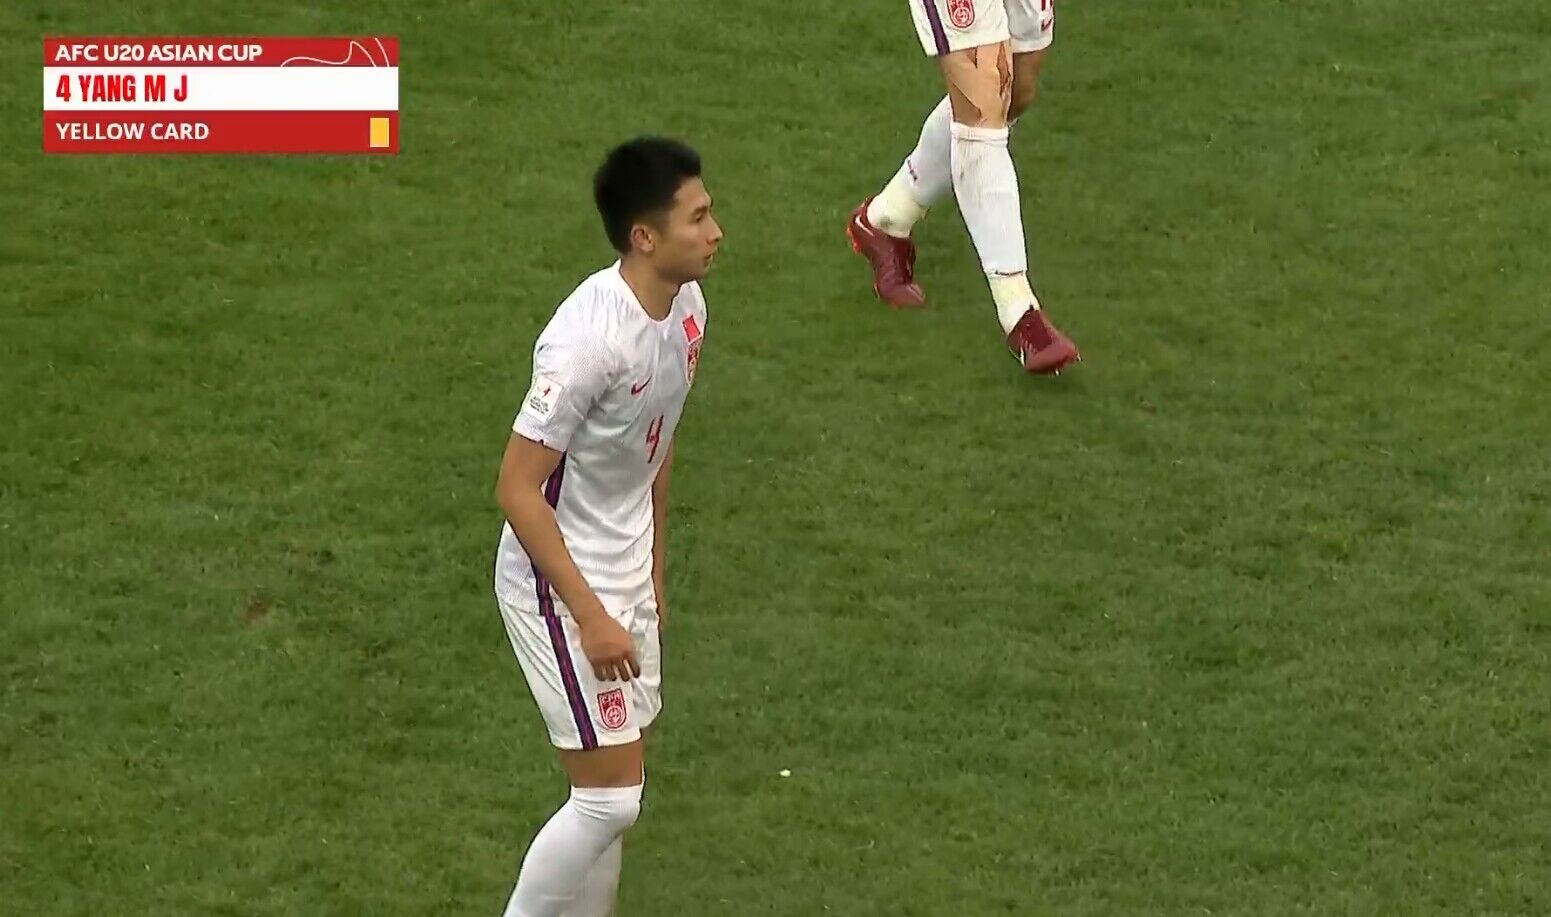 阳敏杰与韩国球员发生冲突被黄牌警告